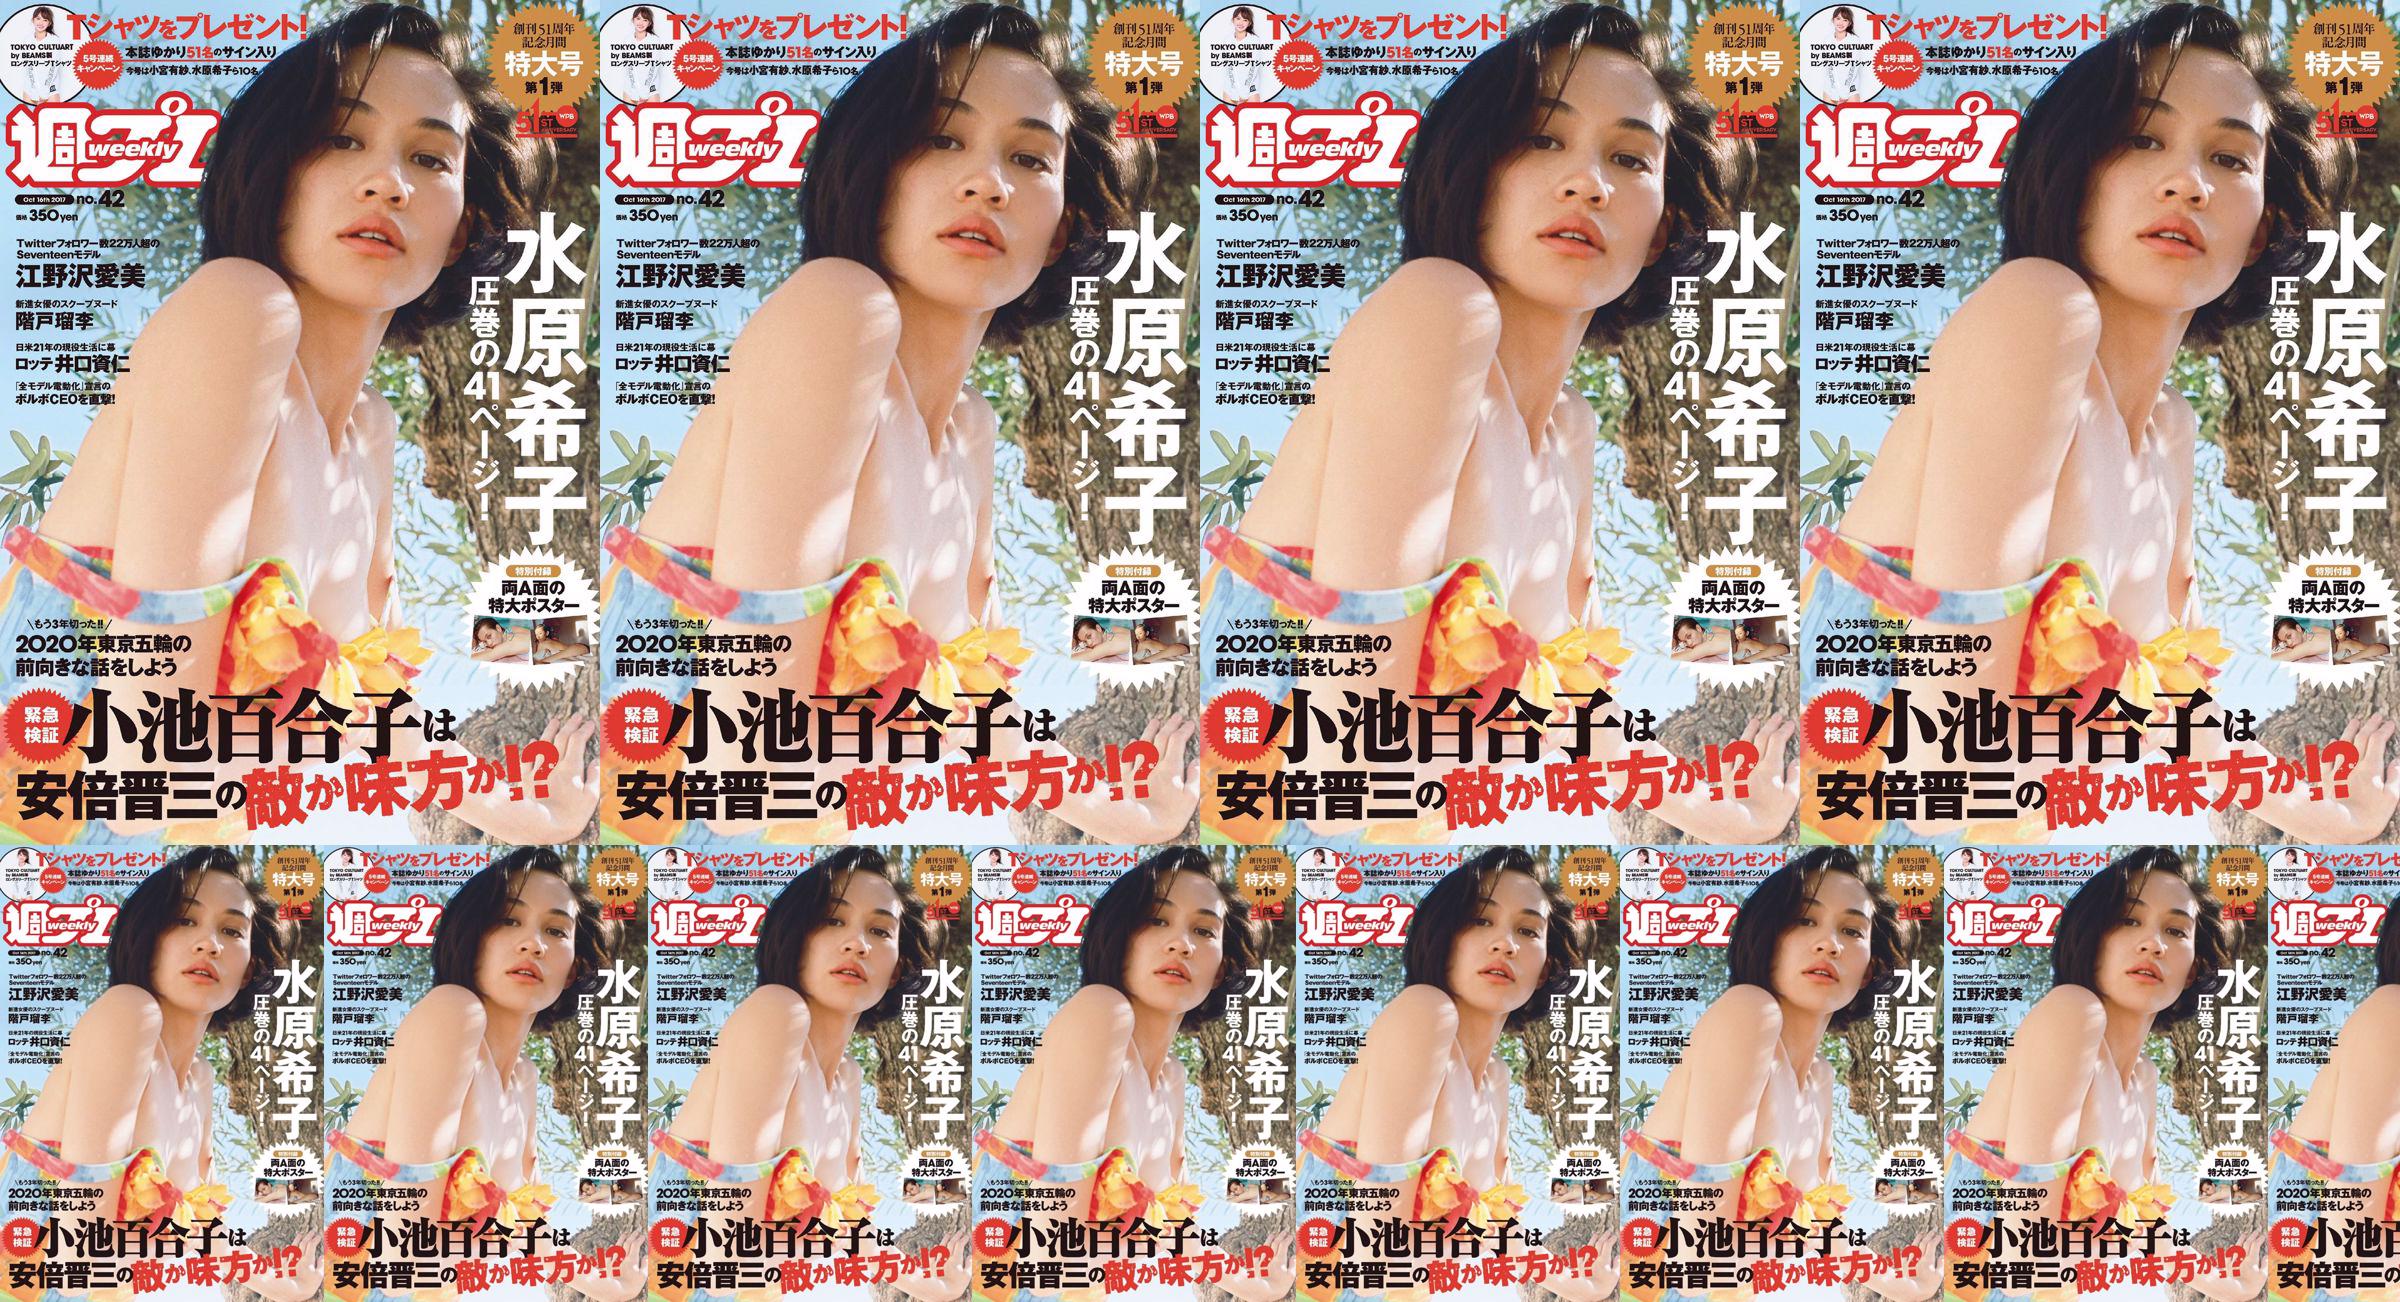 Kiko Mizuhara Manami Enosawa Serina Fukui Miu Nakamura Ruri Shinato [Playboy semanal] 2017 No.42 Photo Magazine No.0f9232 Página 5